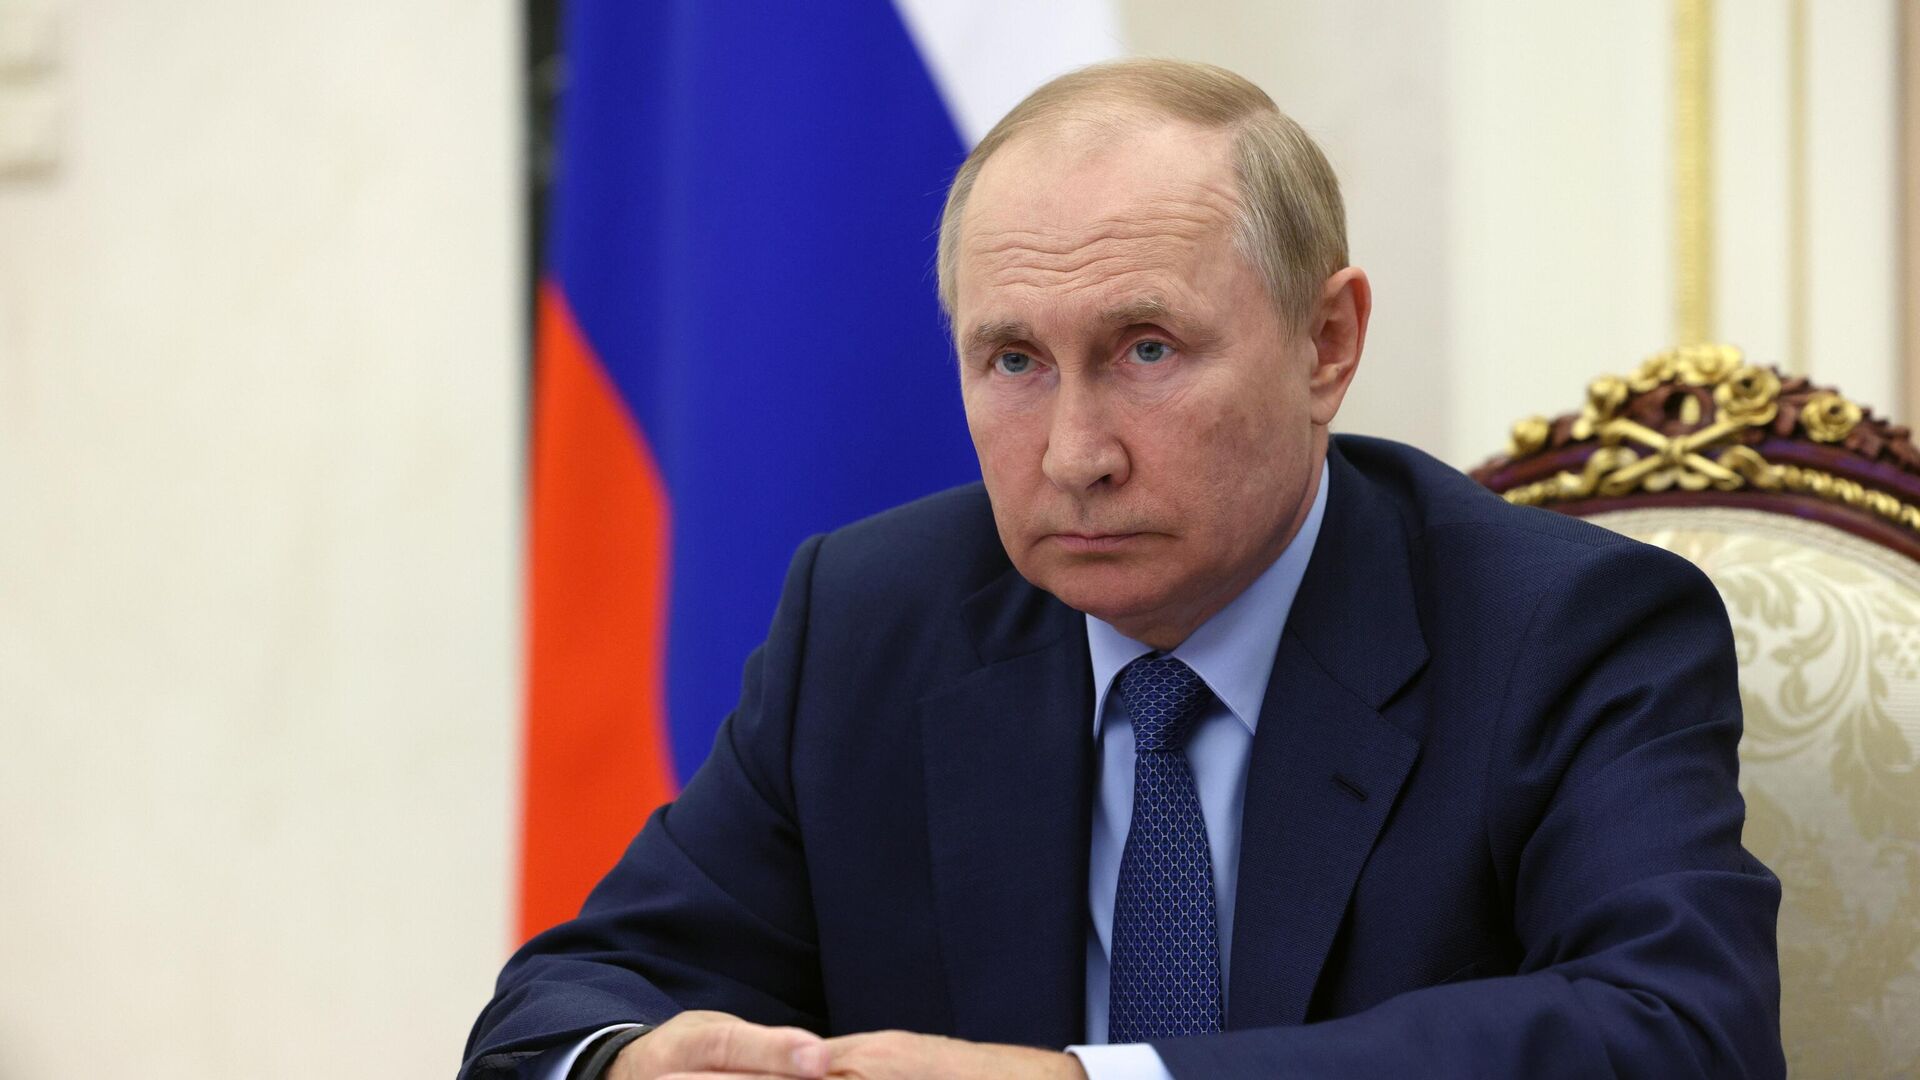 Putindən GÖSTƏRİŞ: “İşğal olunan ərazilərdə “referendumlar” təxirə salınsın”